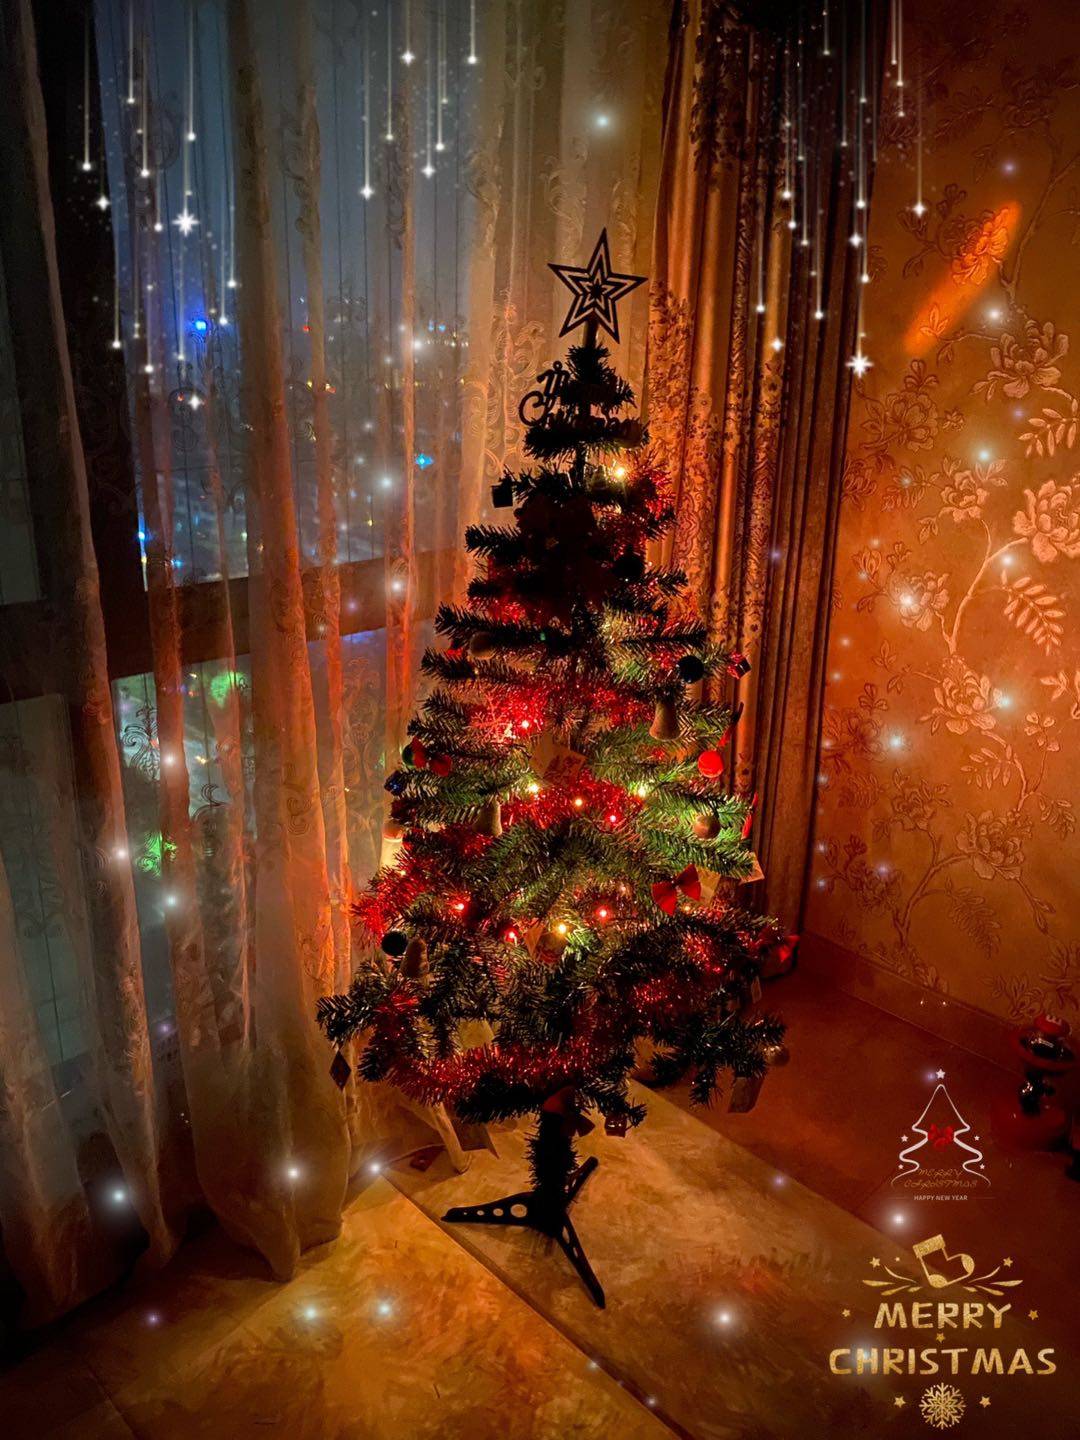 【全国包邮.圣诞树】55.9元包邮满满的一颗礼物圣诞树！高度1.5米，带LED彩灯+圣诞卡片+圣诞蝴蝶结+圣诞礼物盒+雪球+铃铛~在圣诞节许下最美好的新年愿望！（售卖时间截止12.31）